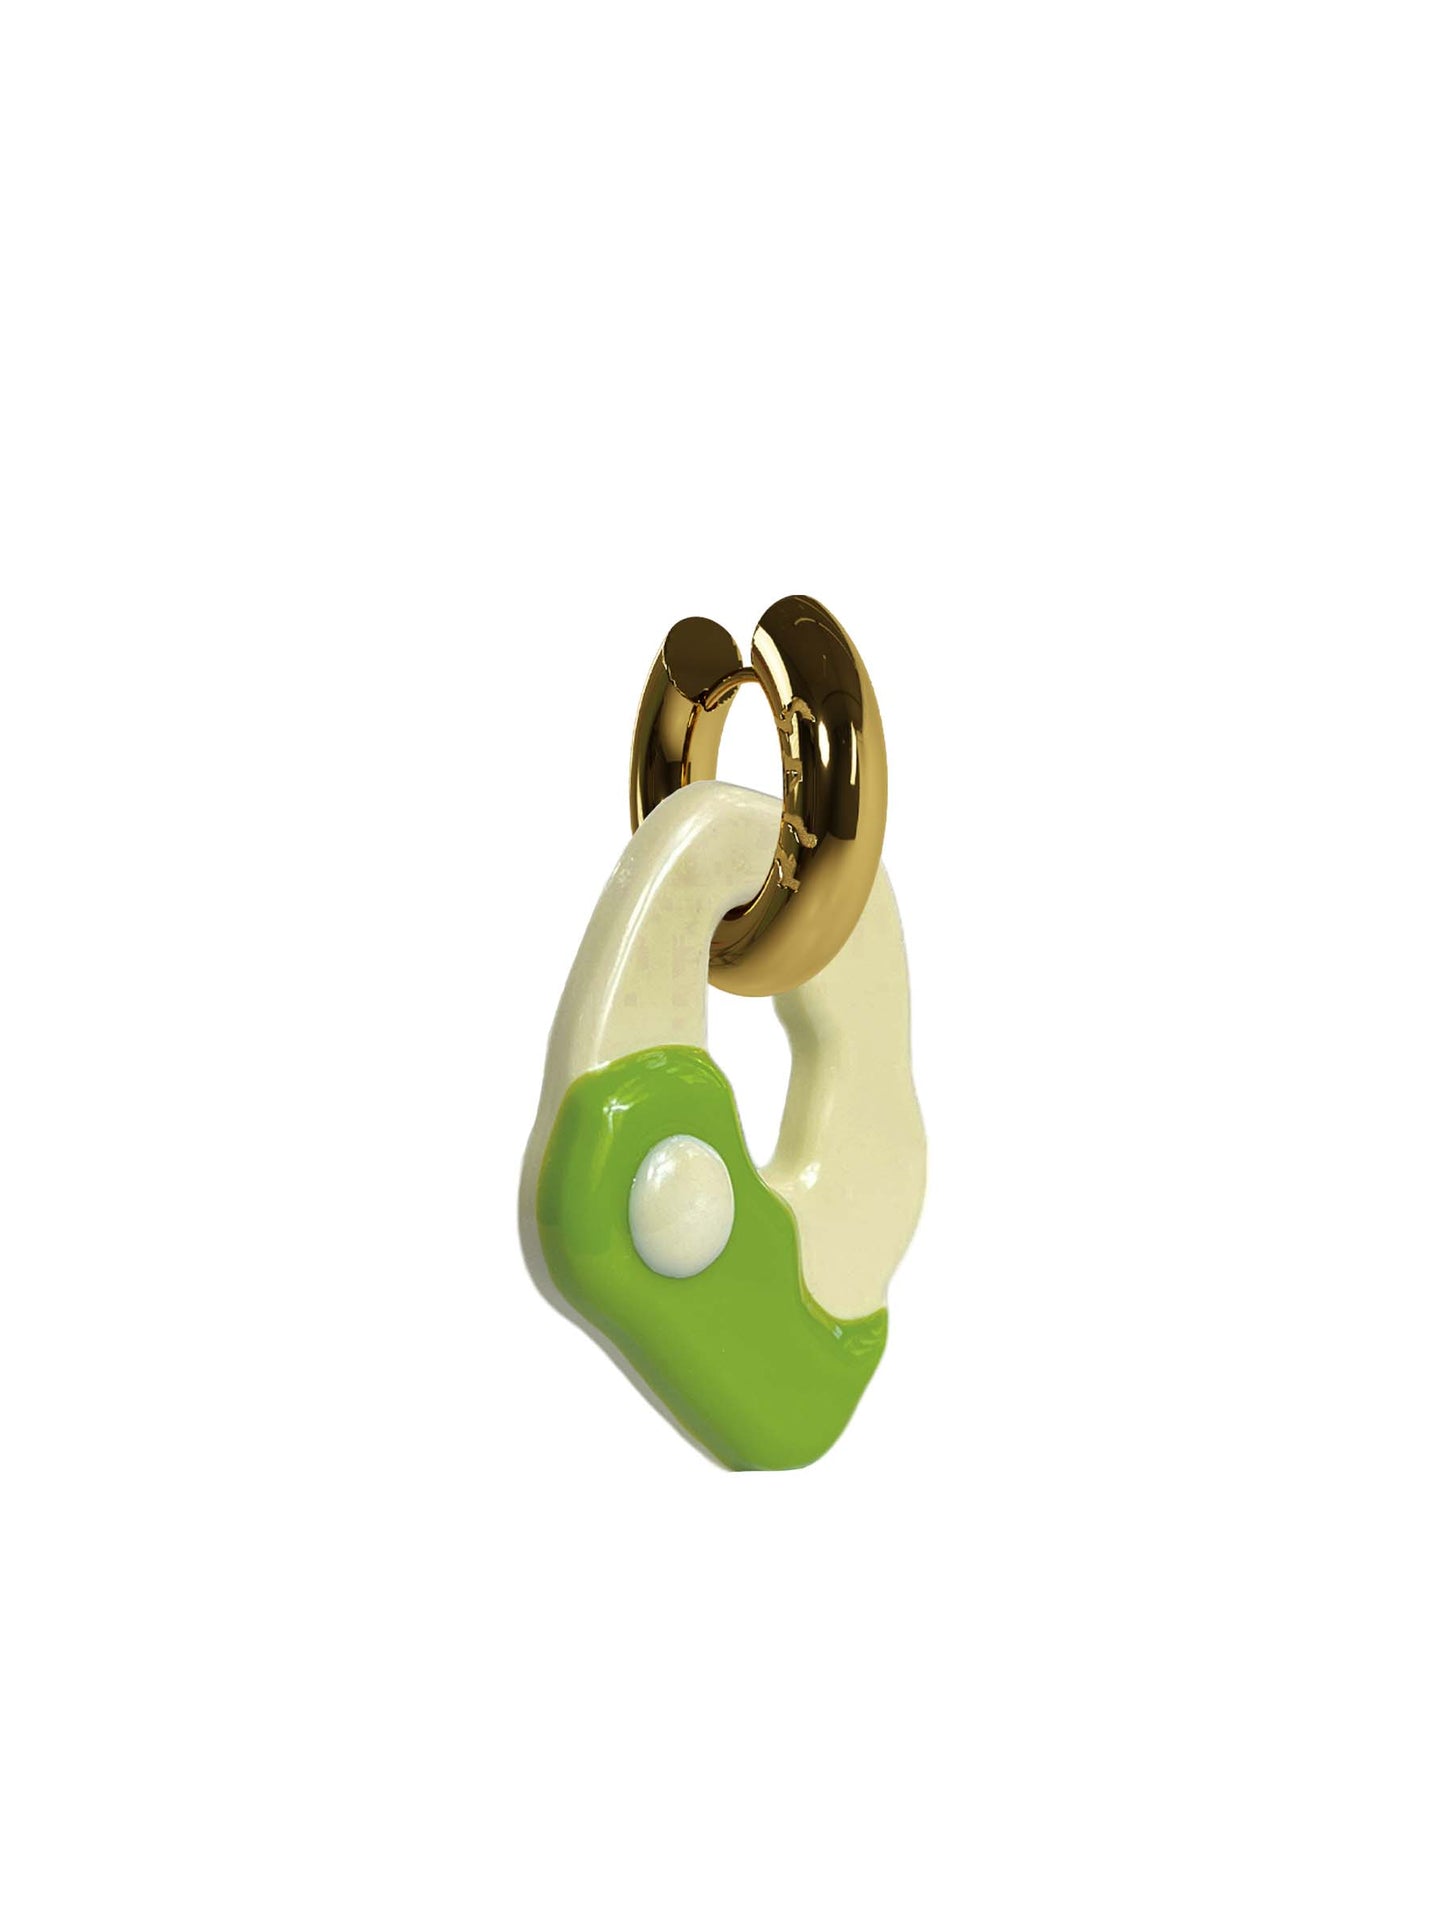 Yin Yang matcha gold earring (pair)